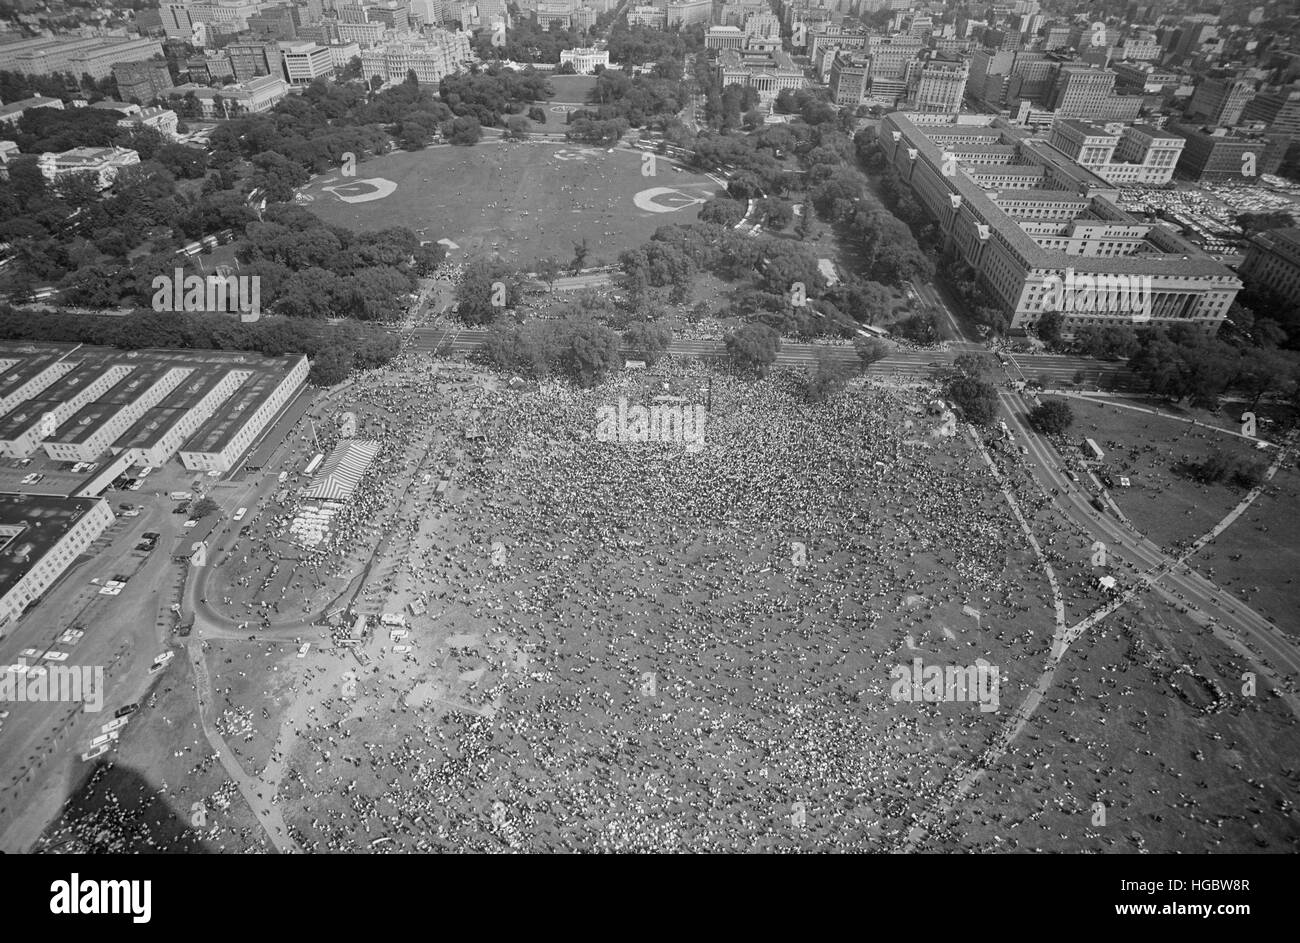 28. August 1963 - Luftbild des Marsches auf Washington in Washington, D.C. Stockfoto